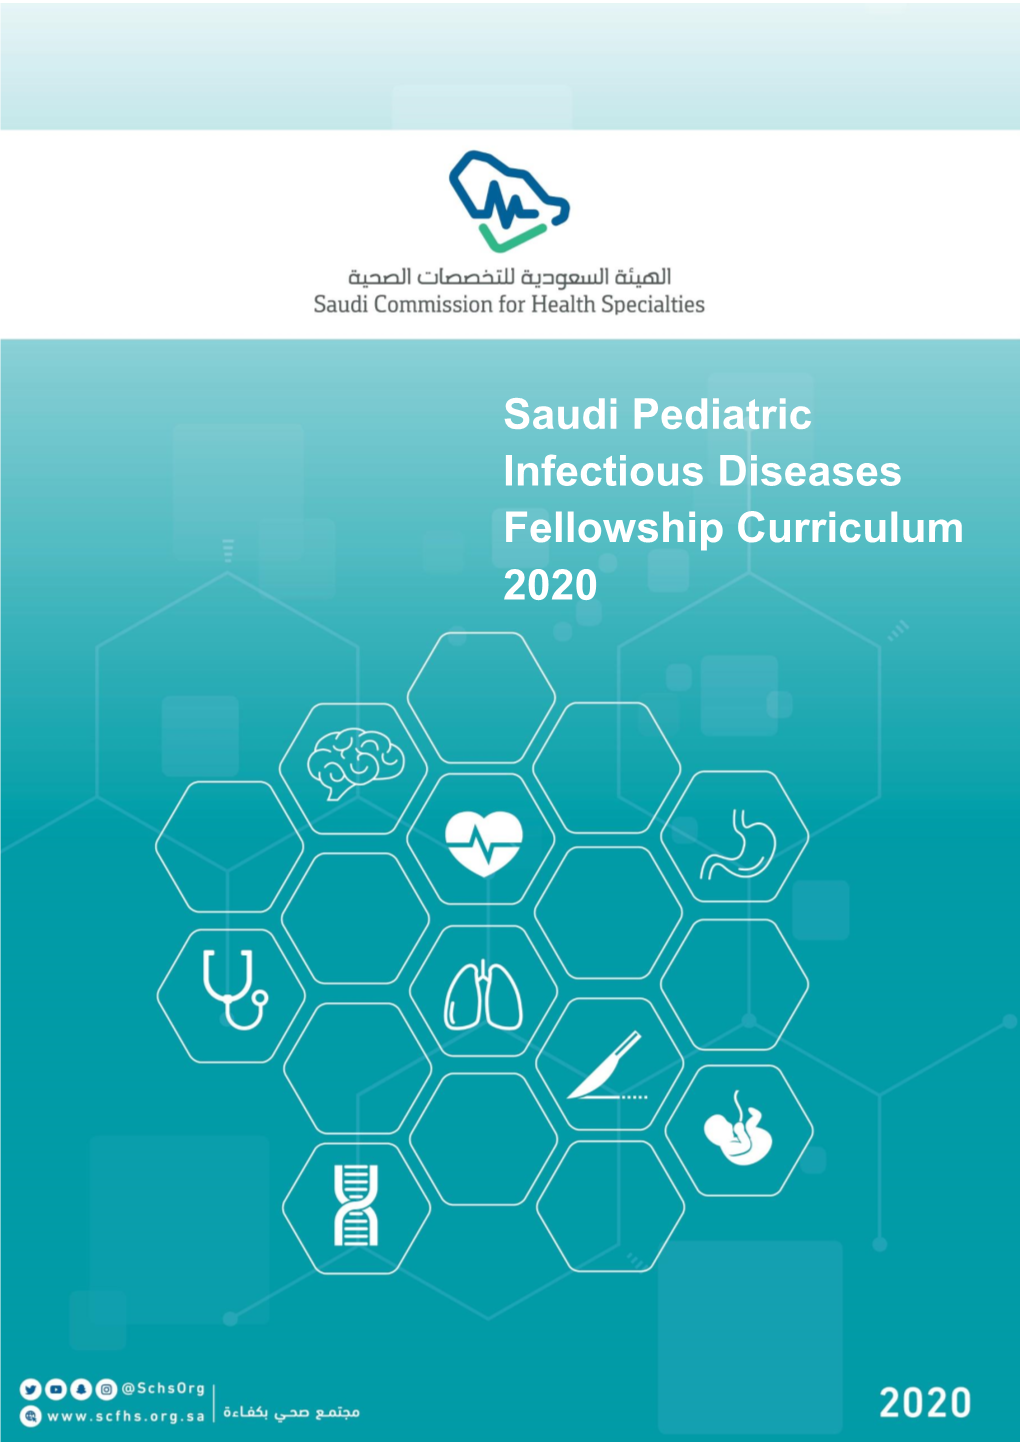 Saudi Pediatric Infectious Diseases Fellowship Curriculum 2020